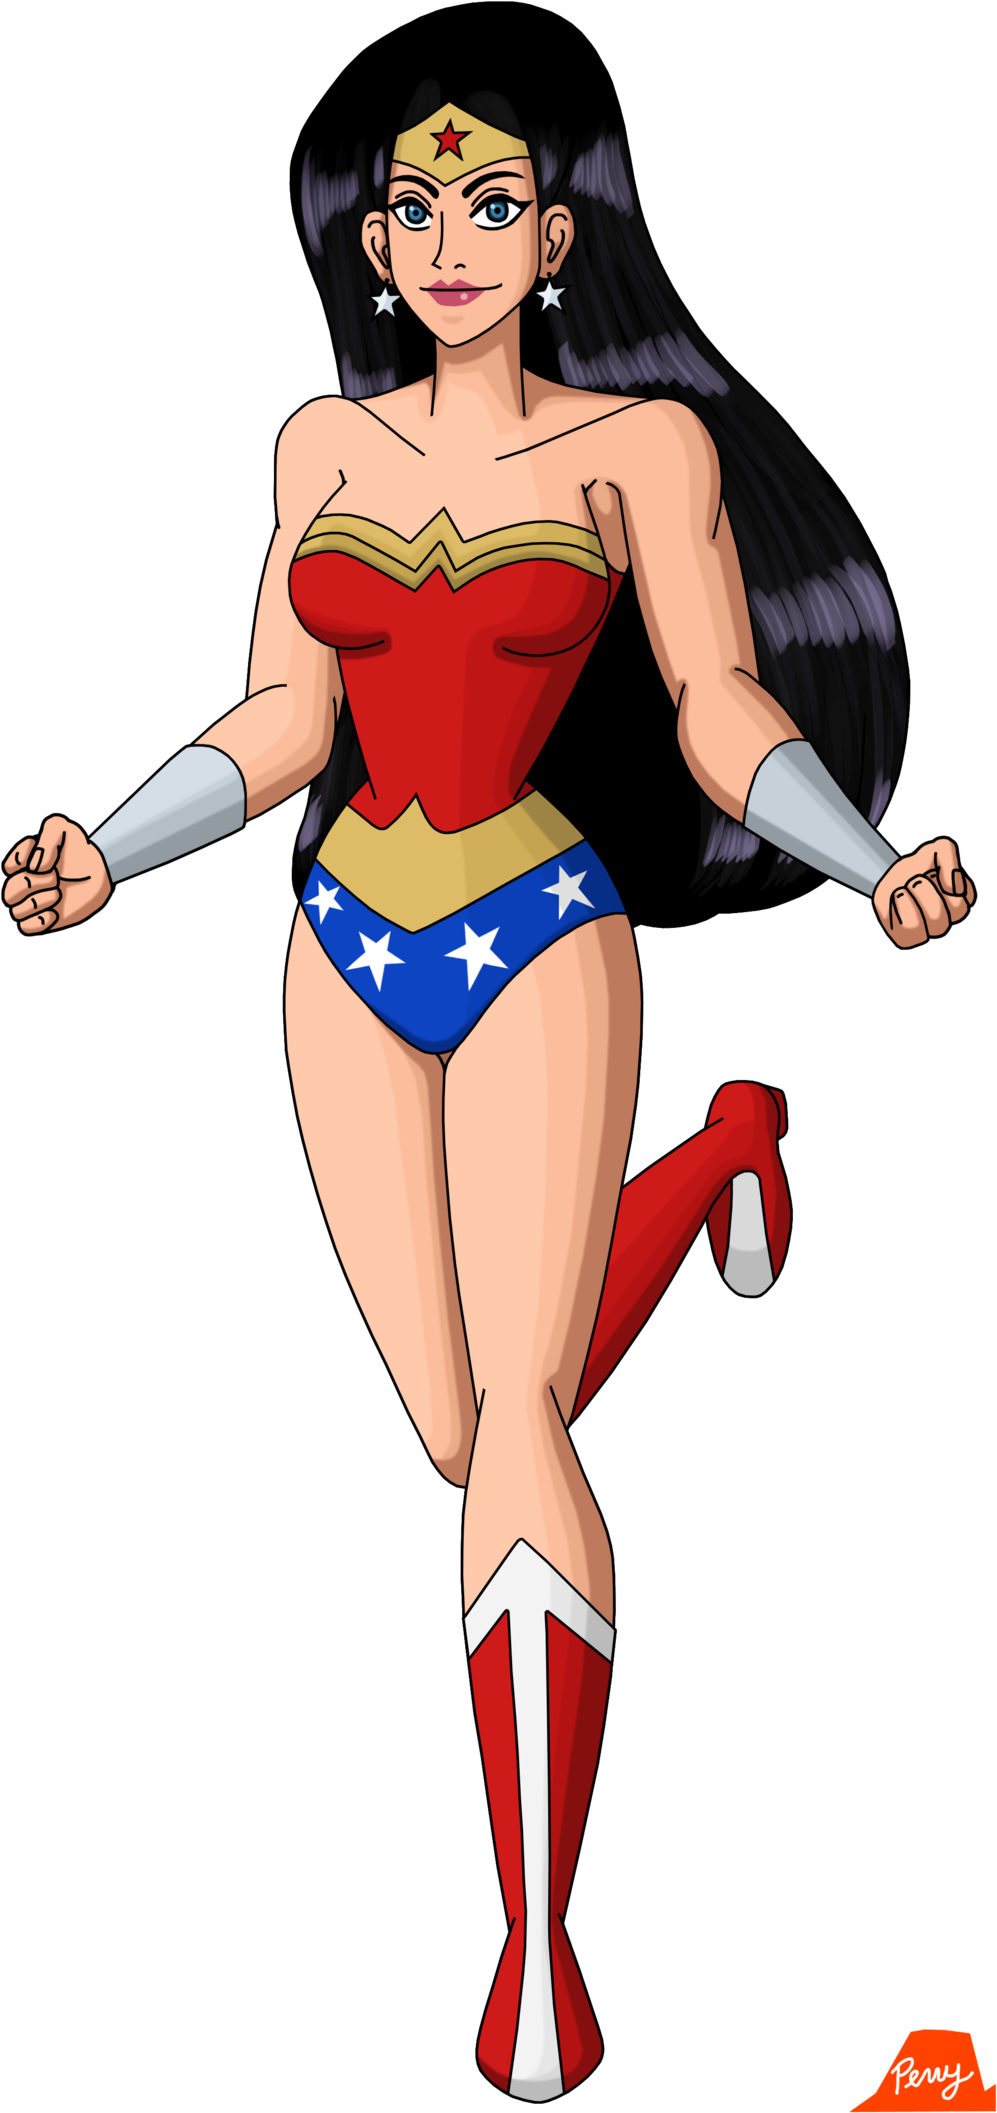 Wonder Woman 2017 By Perrywhite - Wonder Woman Cartoon Character (1024x2141)